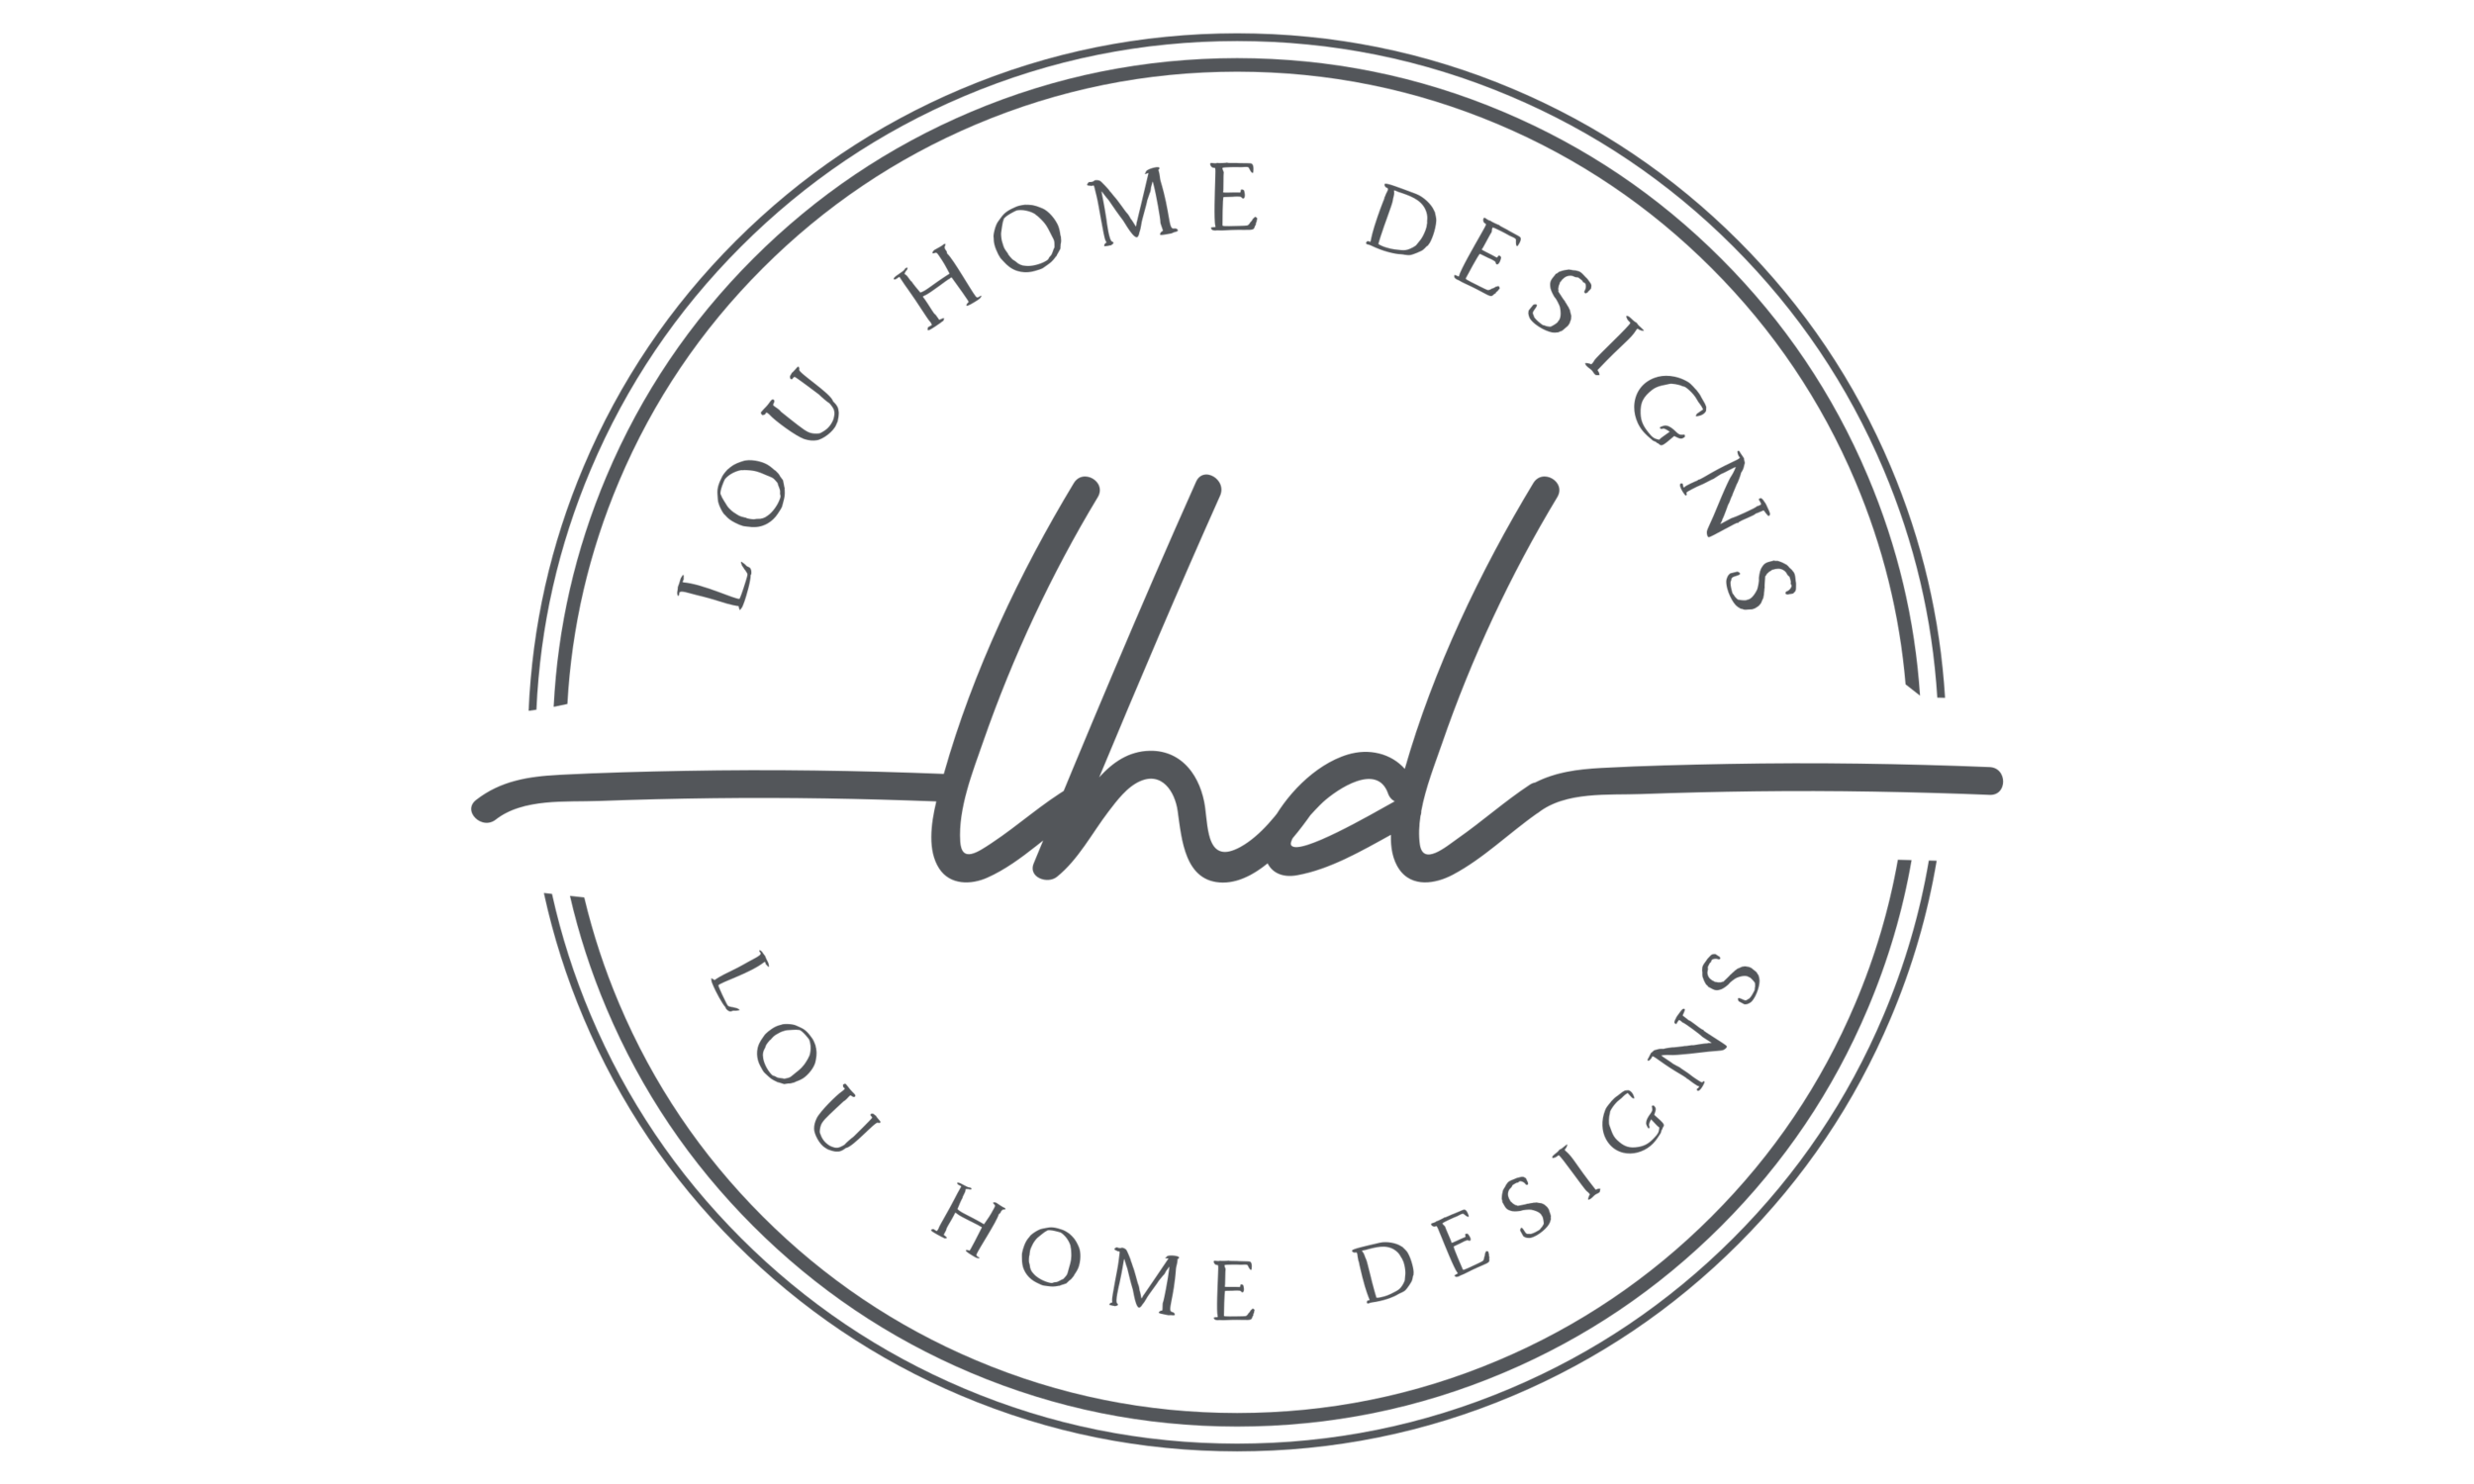 Lou Home Designs